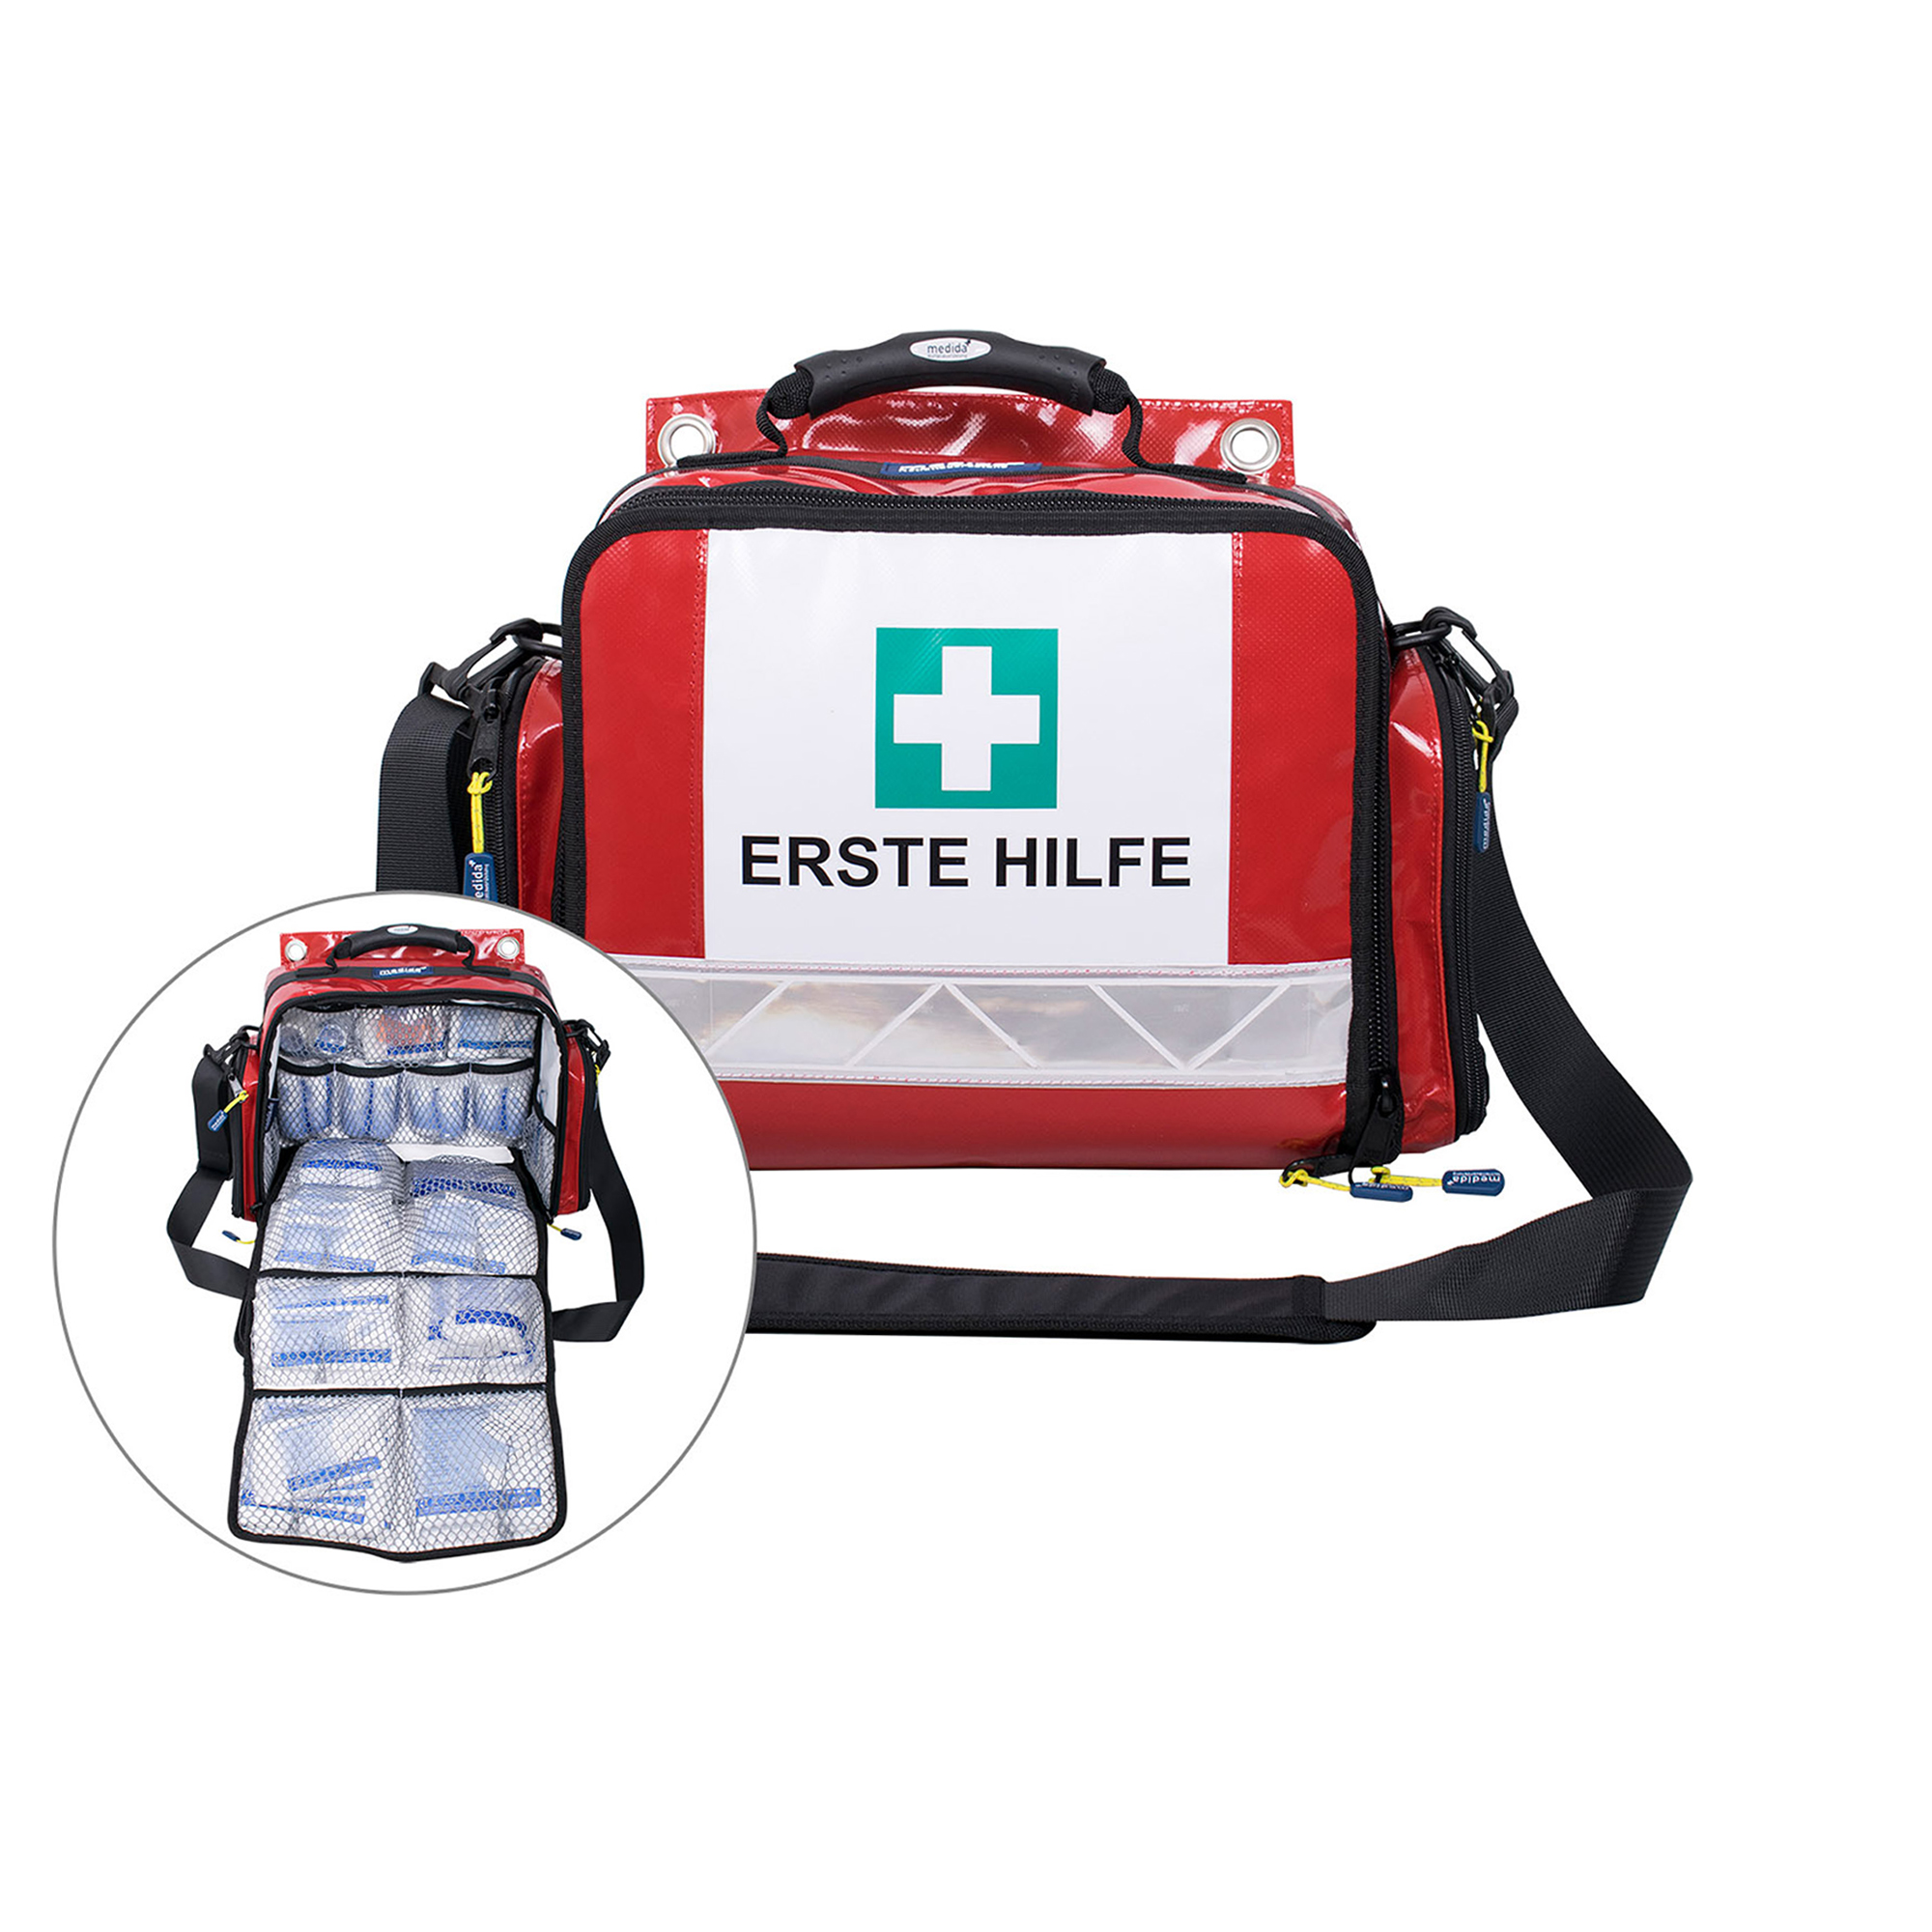 Erste-Hilfe-Tasche mit Verbandstofffüllung/Verbandbuch nach DIN 13169:2021-11